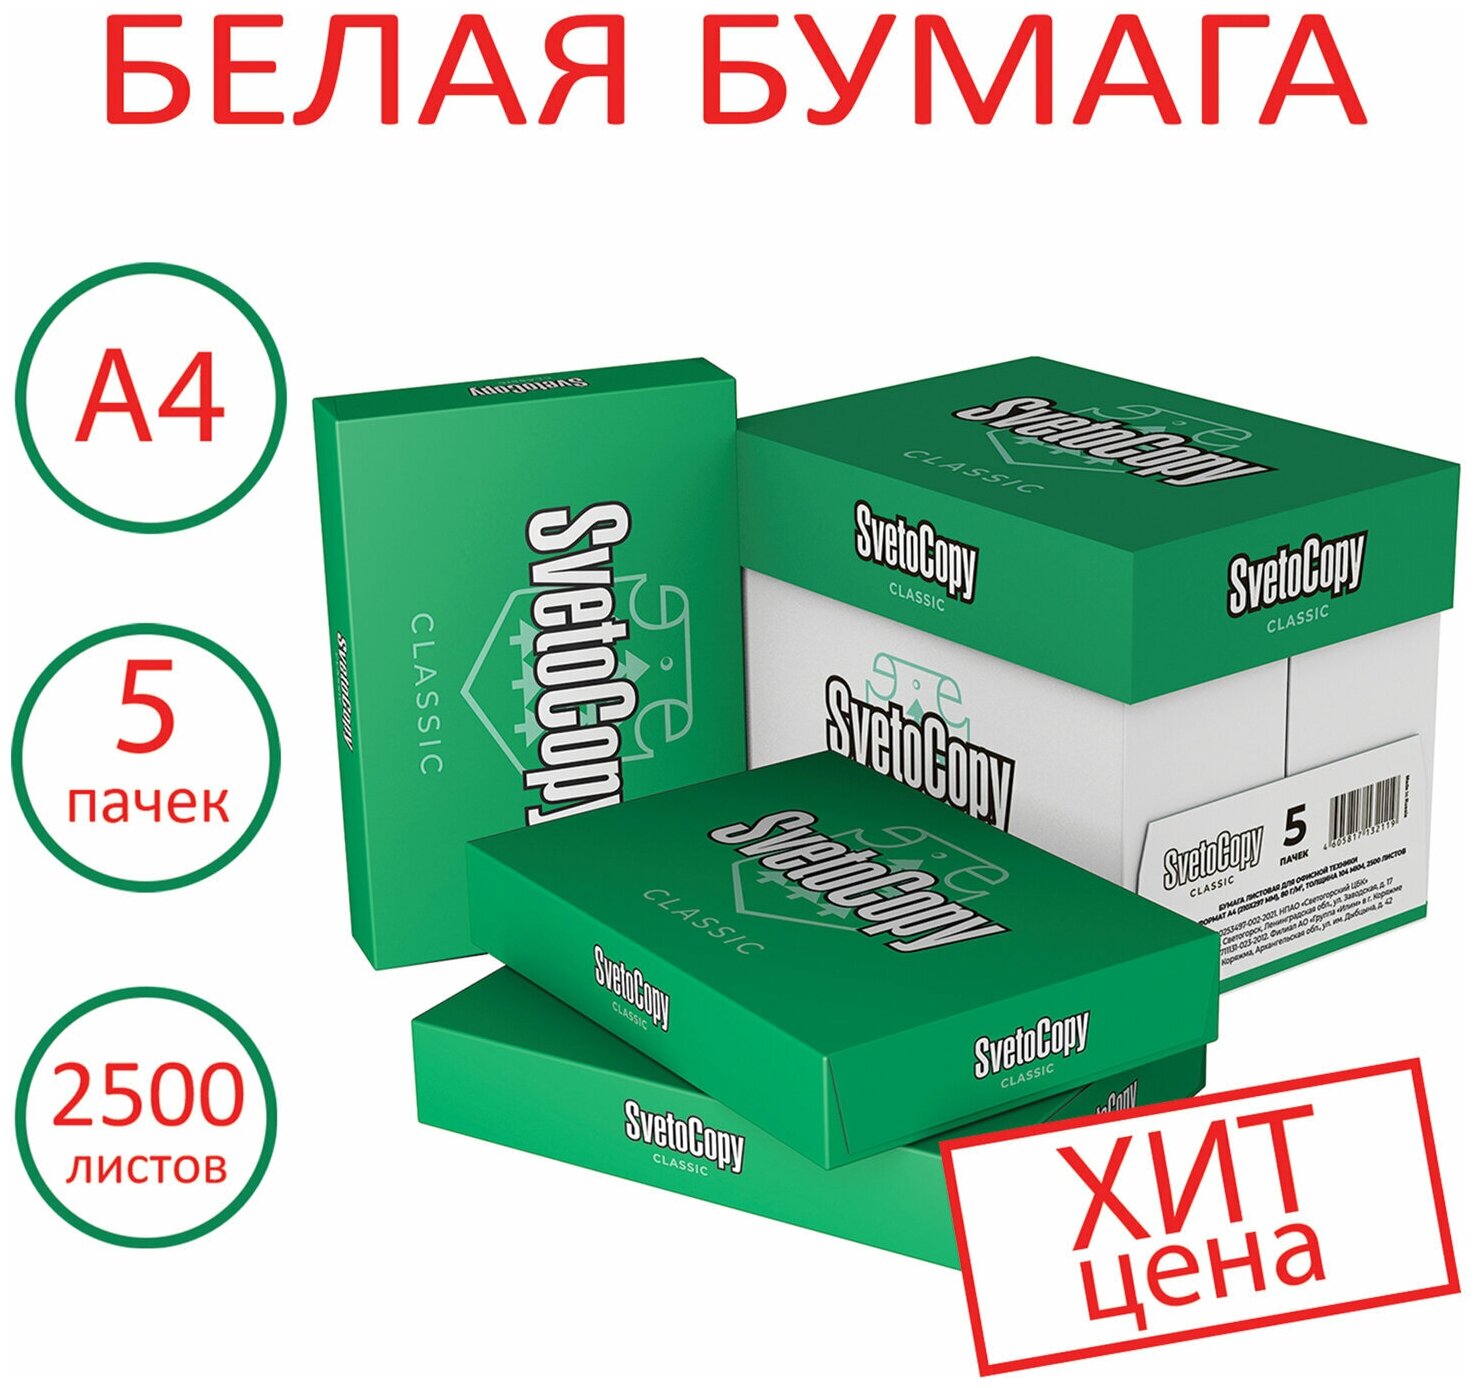 Бумага для принтера Svetocopy Classic А4 Комплект 5 пачек по 500 л 80 г/м2